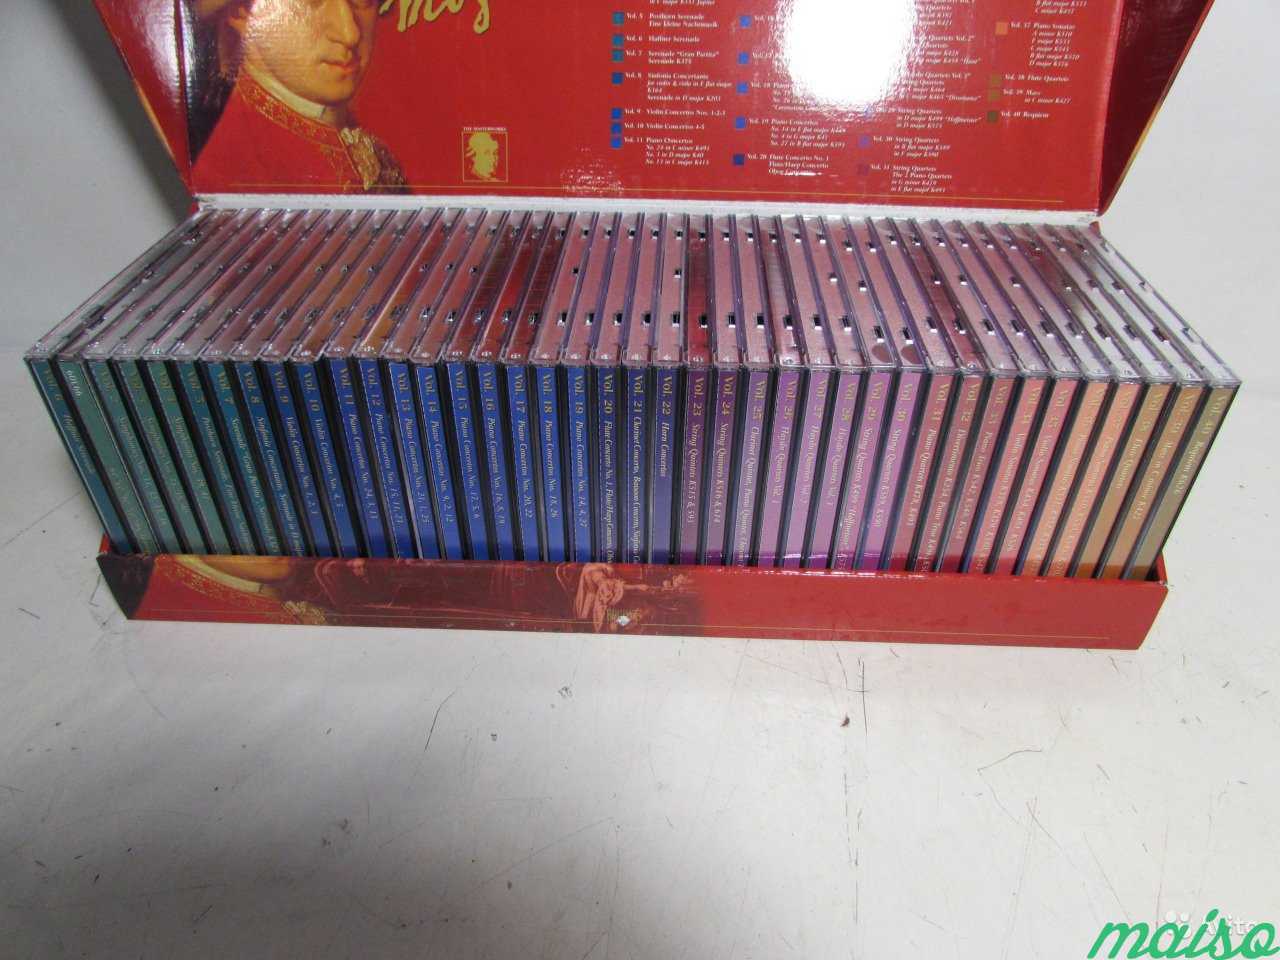 Mozart Подарочный набор (40 CD-дисков) в Санкт-Петербурге. Фото 5